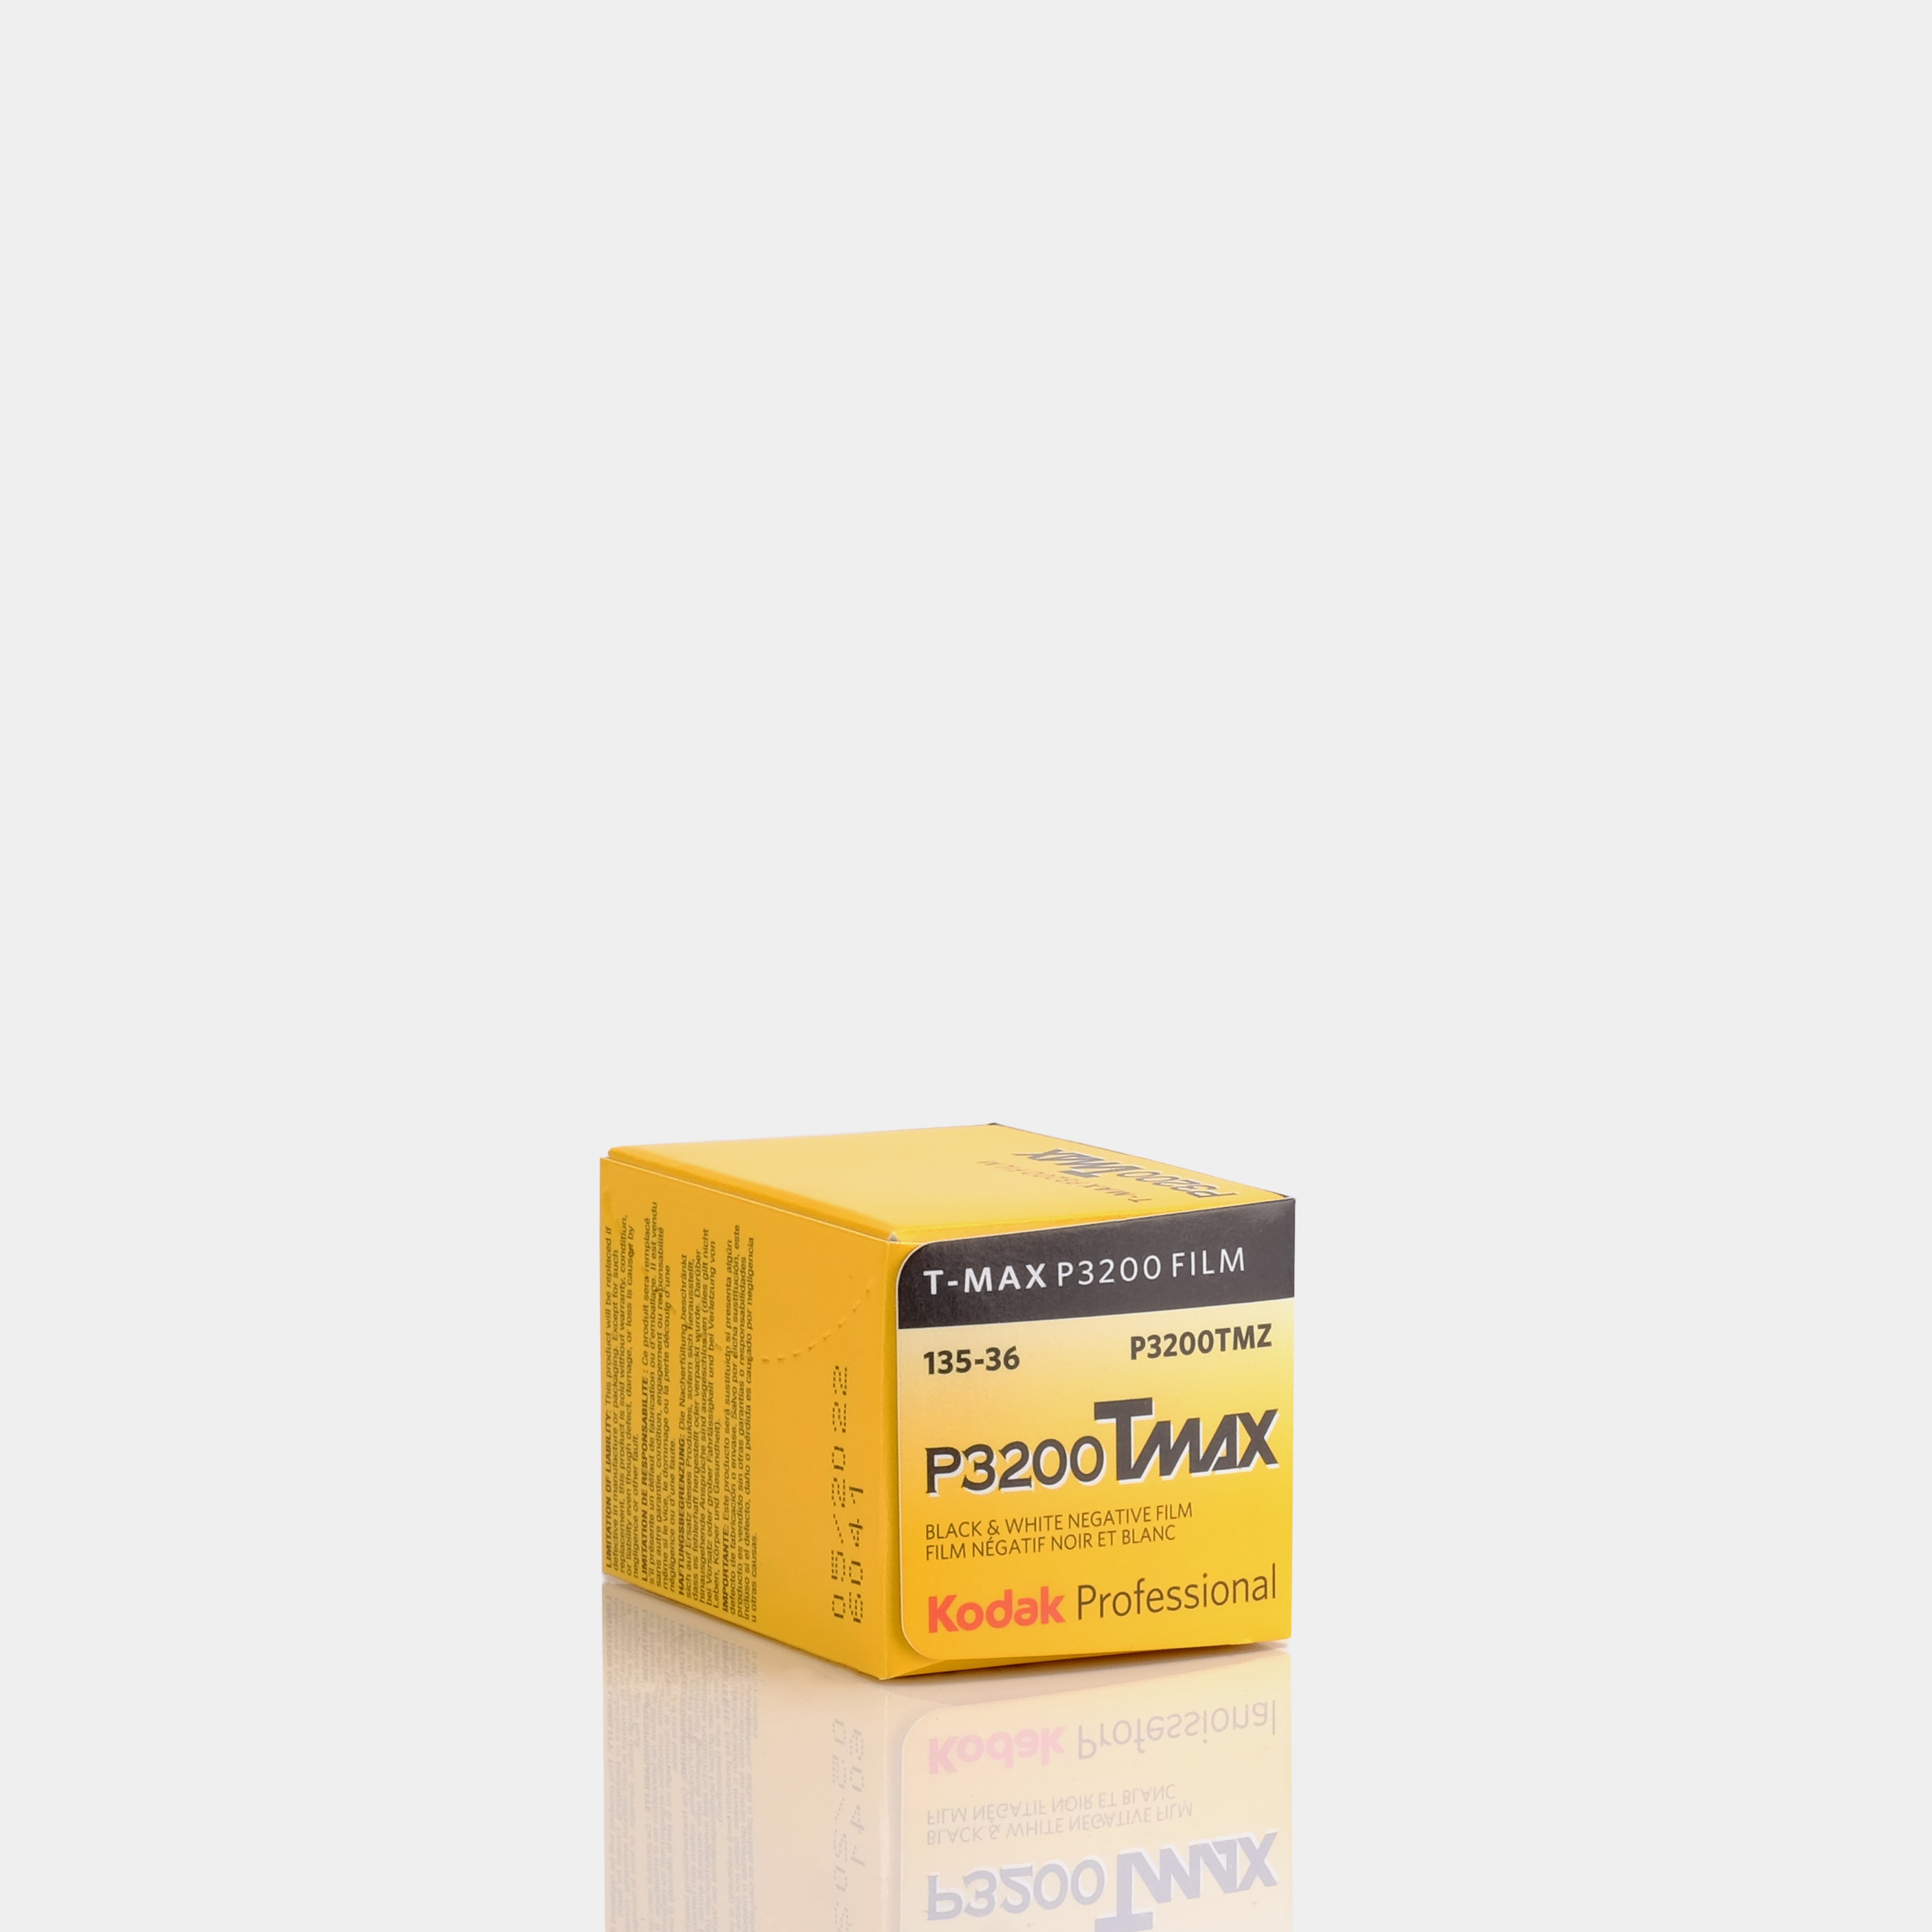 Kodak Professional T-MAX P3200 Black and White 35mm Film - 36 Exposures